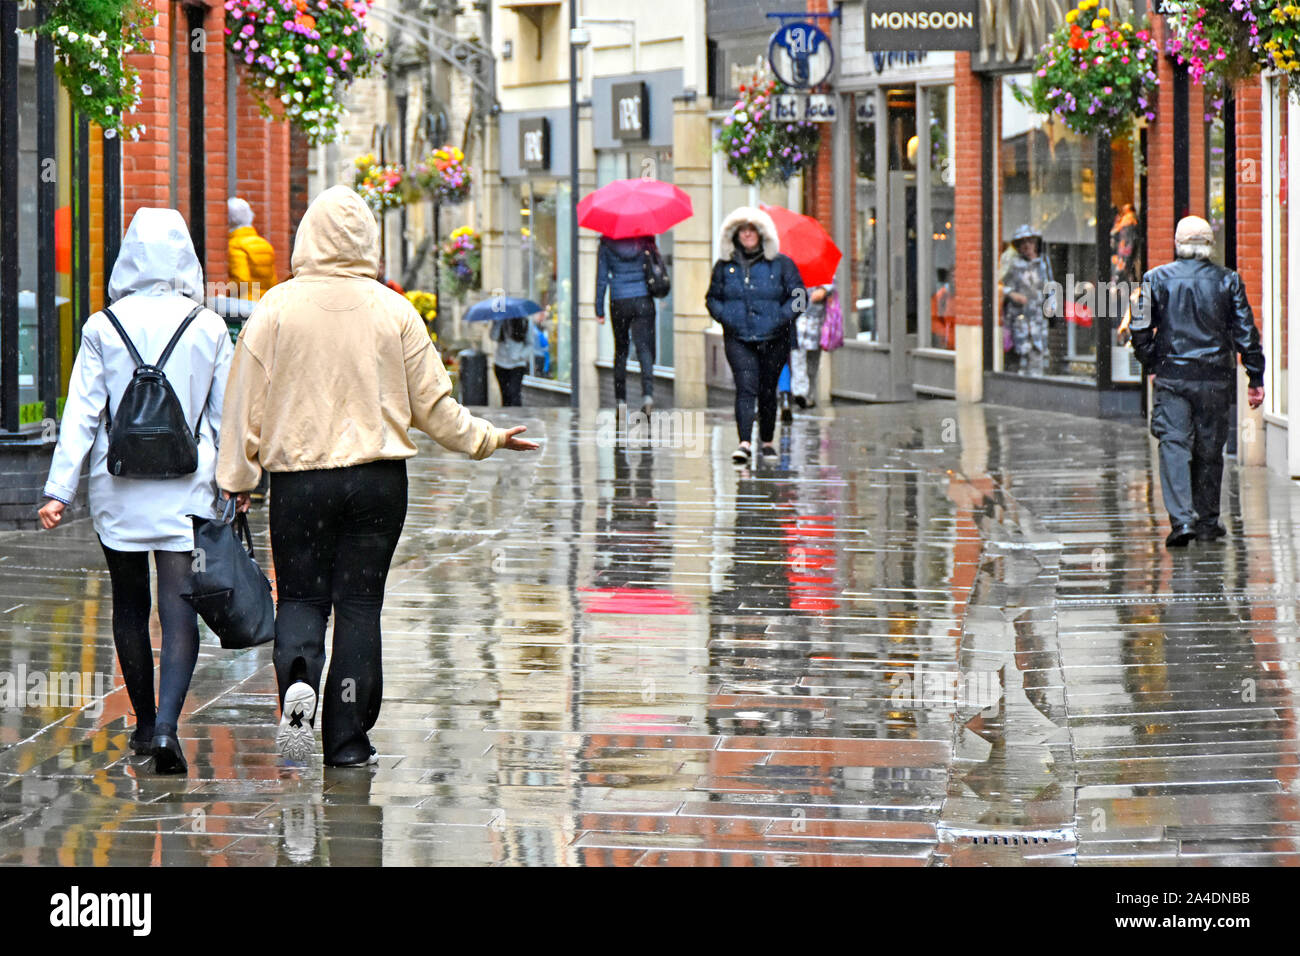 Escena callejera lloviendo sobre las personas en el centro de la ciudad de clima húmedo de peatones sólo los compradores de la zona de la calle en la lluvia y reflexiones reflexión Durham Inglaterra Foto de stock